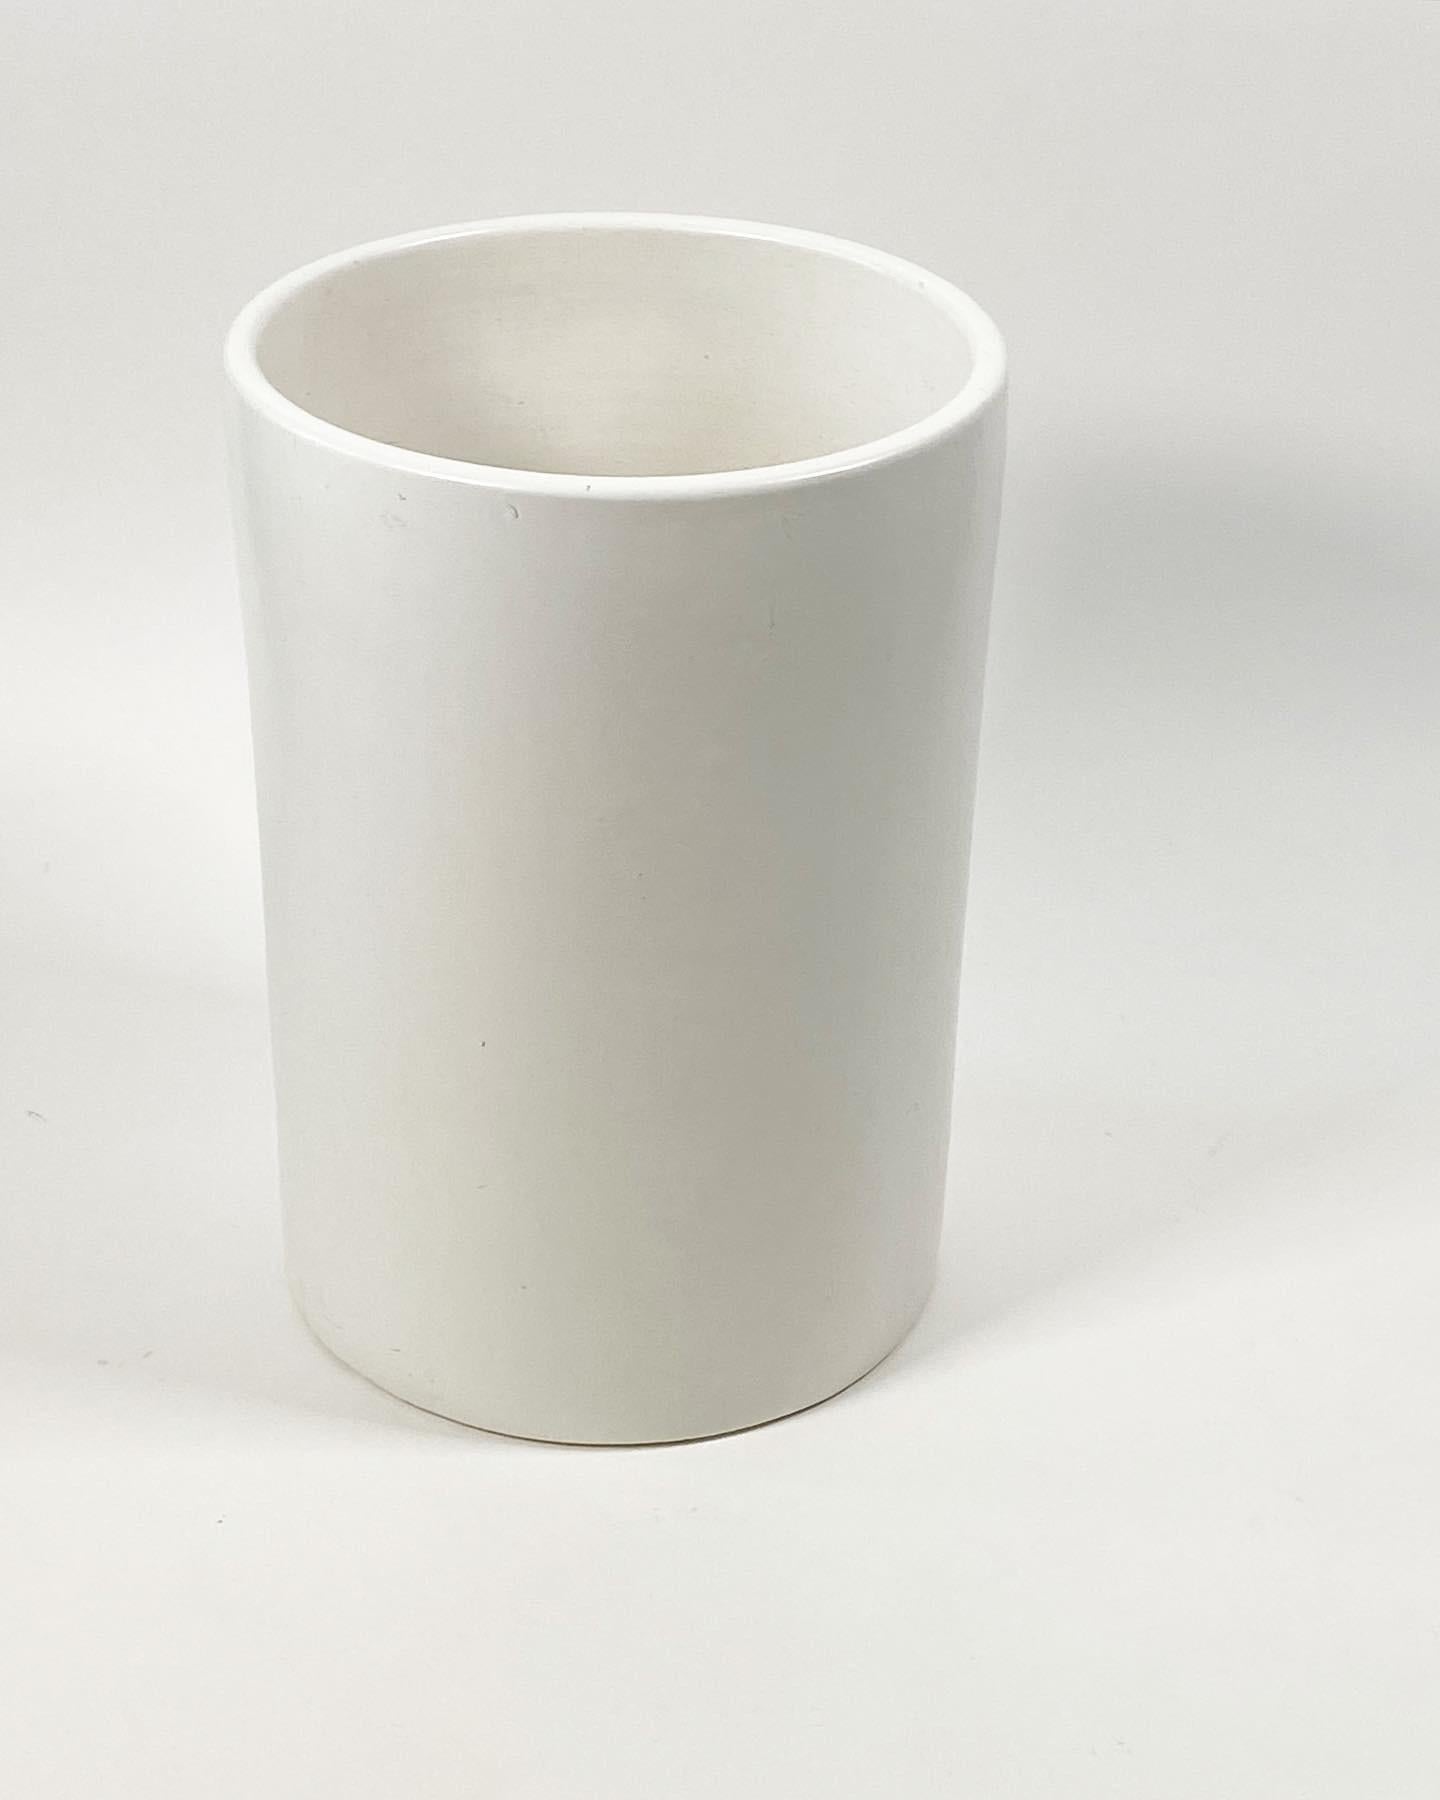 Jardinière cylindrique en céramique blanche conçue par La Gardo Tackett pour Architectural Pottery of Southern California vers les années 1950 et 1960, ce modèle est appelé C-12. Avec des lignes simples et épurées qui s'adaptent à de nombreux